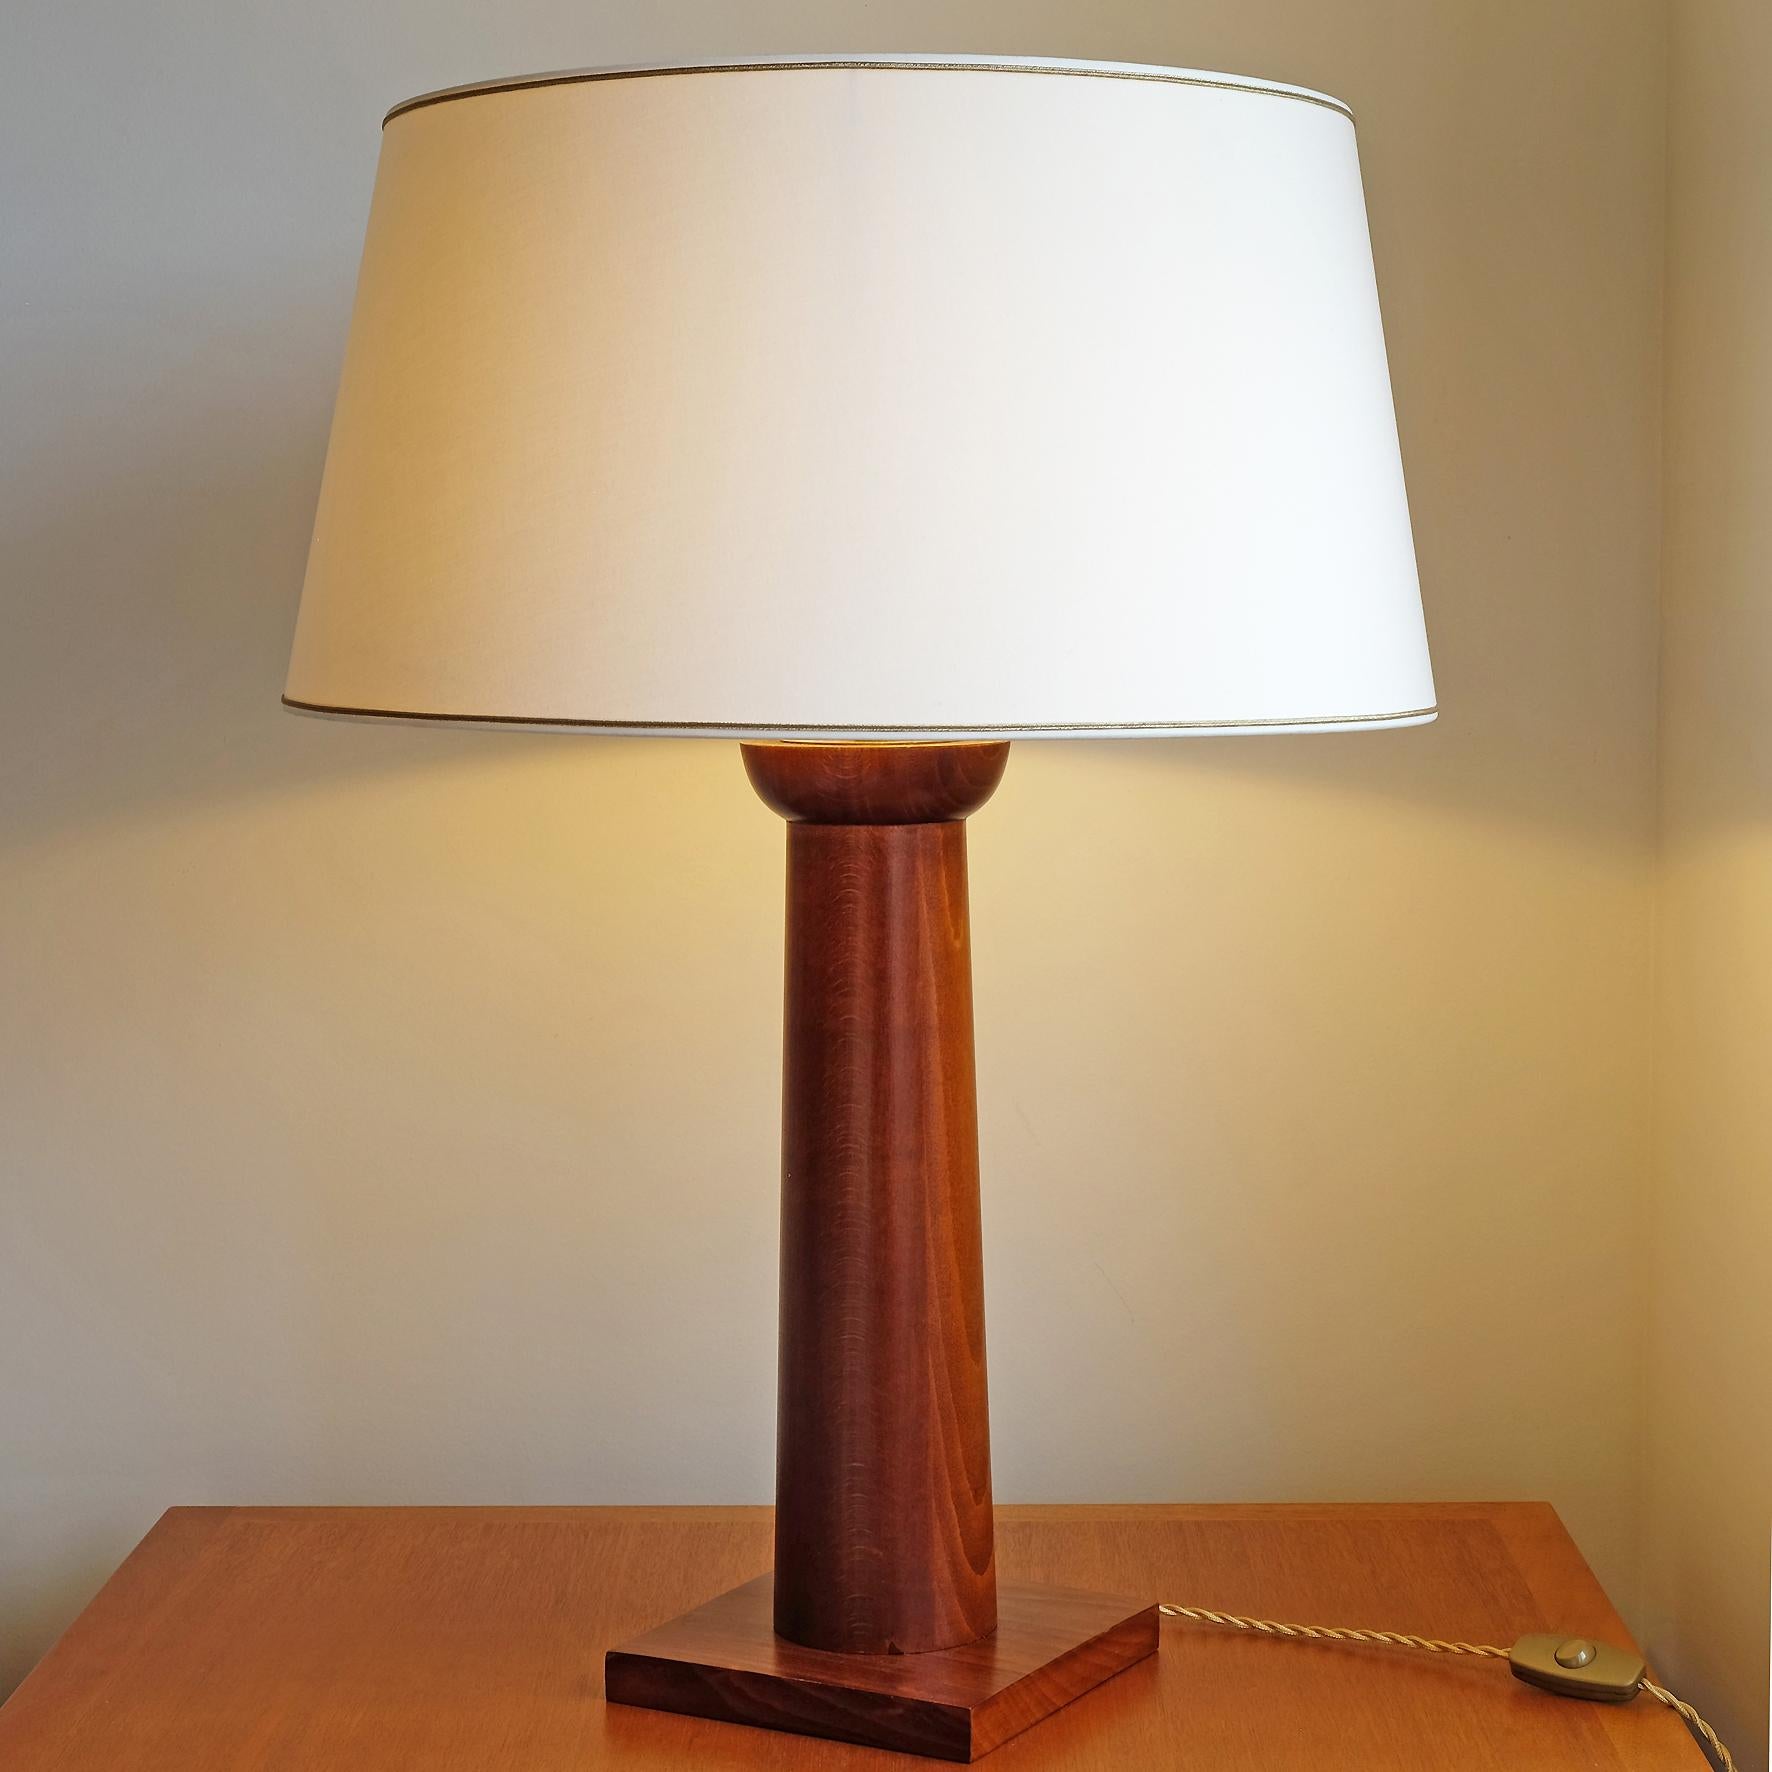 Une lampe de table en hêtre en forme de colonne dorique stylisée.

Ce superbe modèle s'inspire des modèles iconiques de Jean-Michel Frank.

Hauteur totale avec abat-jour : 75 cm (29 in.1/2)
Diamètre de l'abat-jour : 55 cm (21 in.3/4).

